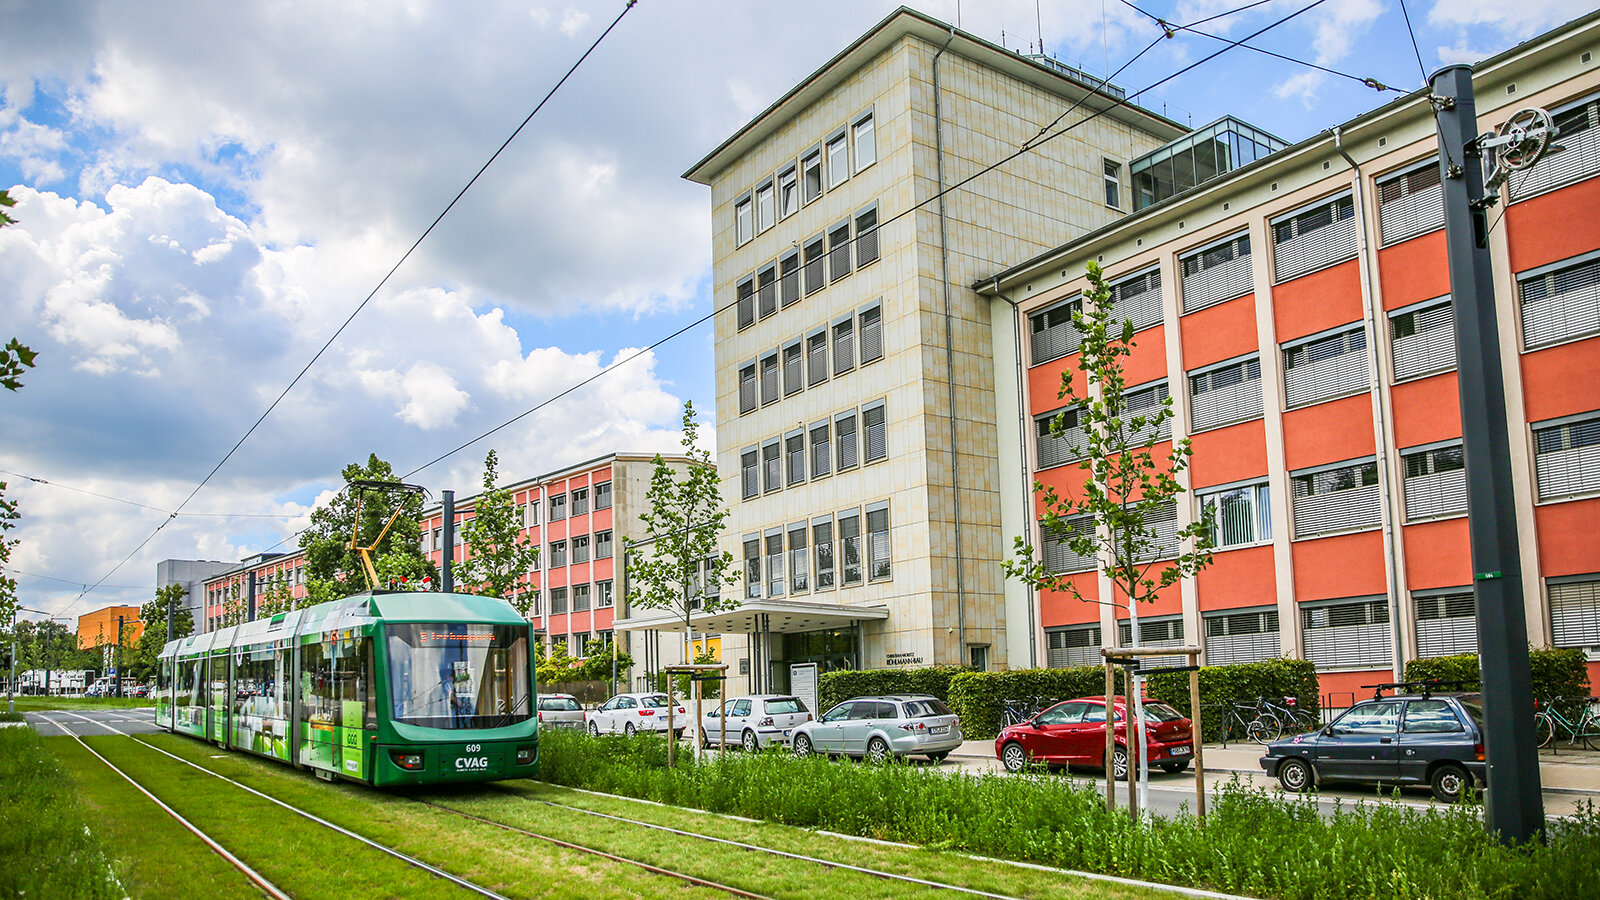 Eine Straßenbahn fährt vor einer Gebäudefront entlang.